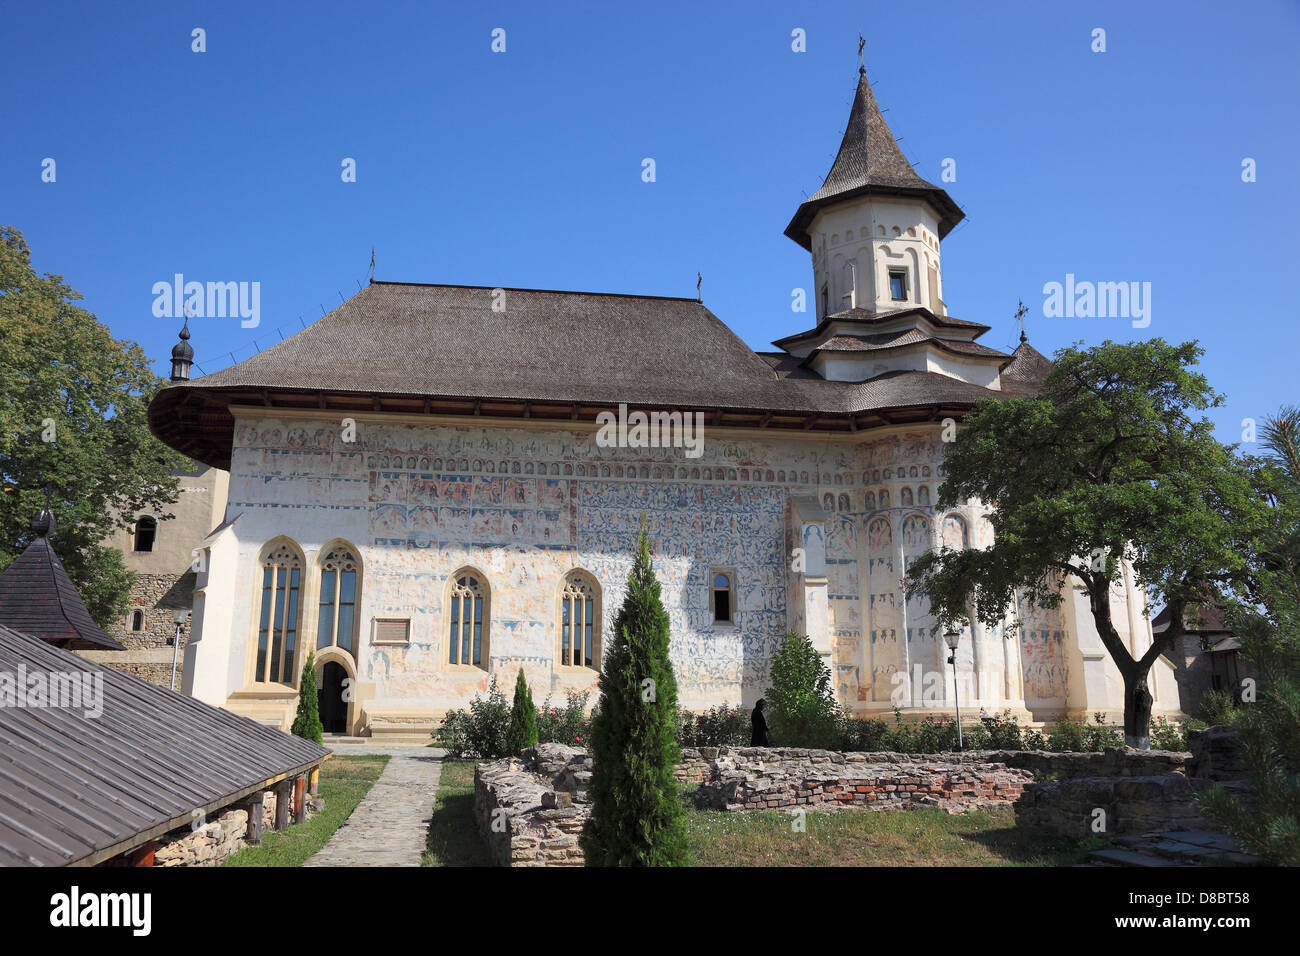 Probota, Rumänien, das Kloster befindet sich in Probota, nahe der Stadt Dolhasca in Rumänien. Die Klosterkirche Sf Nicolae, Saint Stockfoto